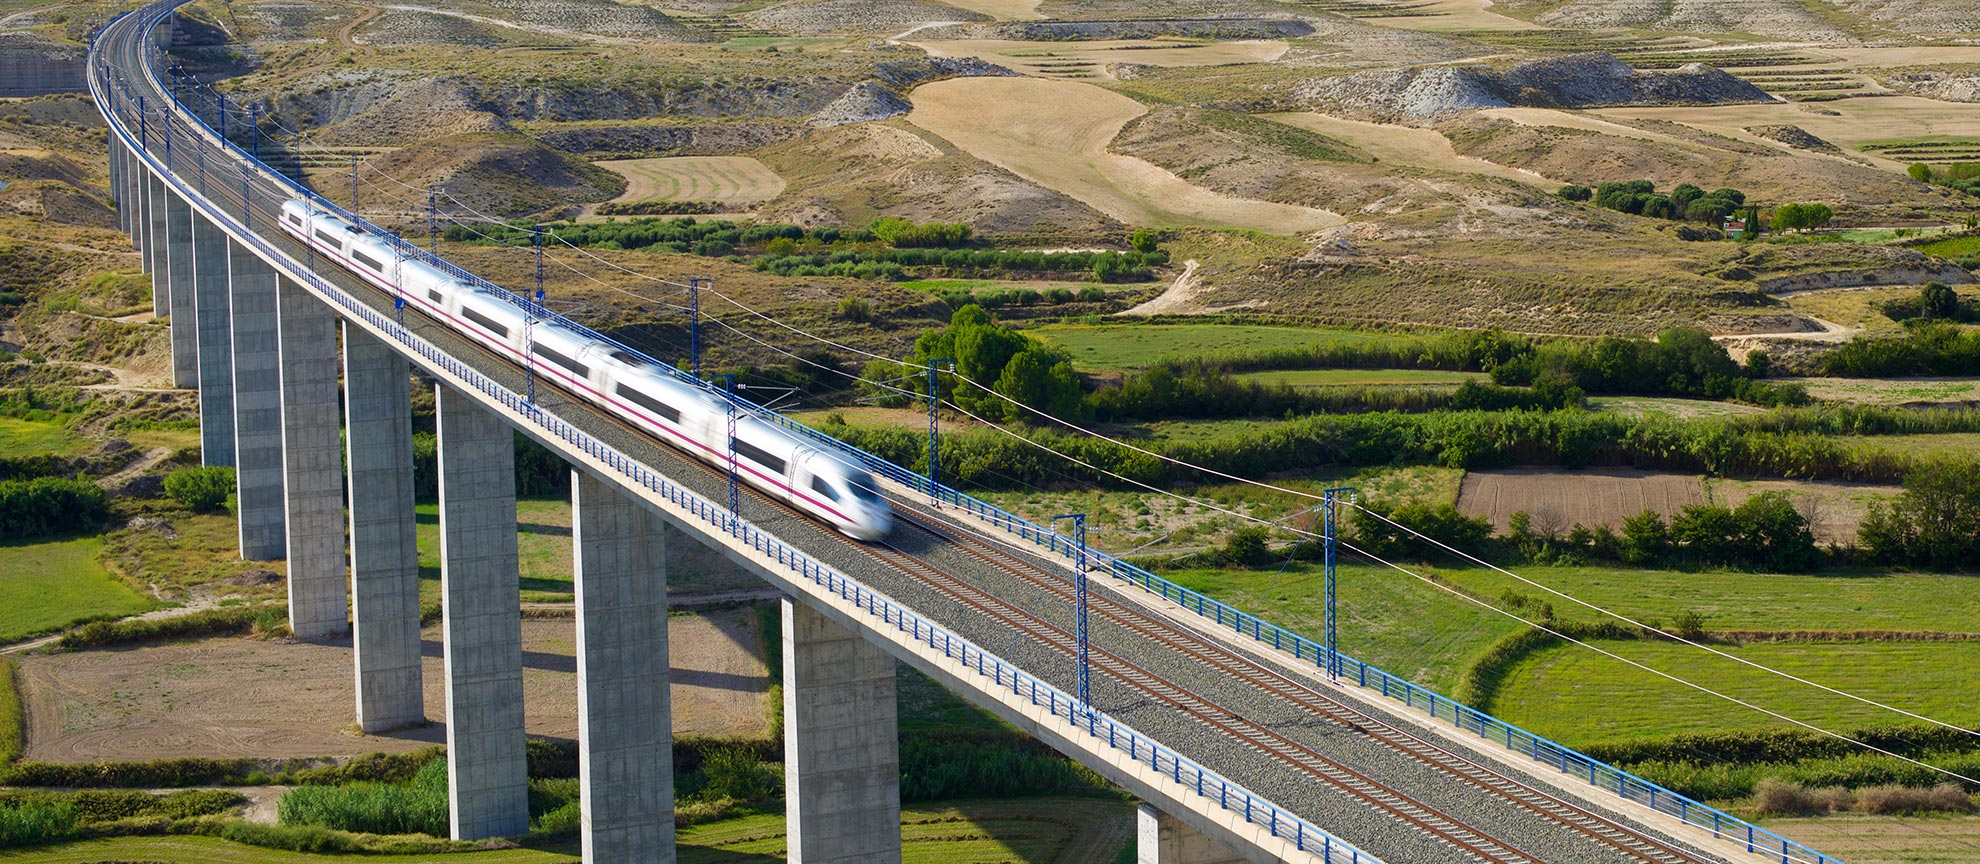 Culpa Descubrimiento Furioso Viaje por España en sus trenes de alta velocidad | spain.info en español